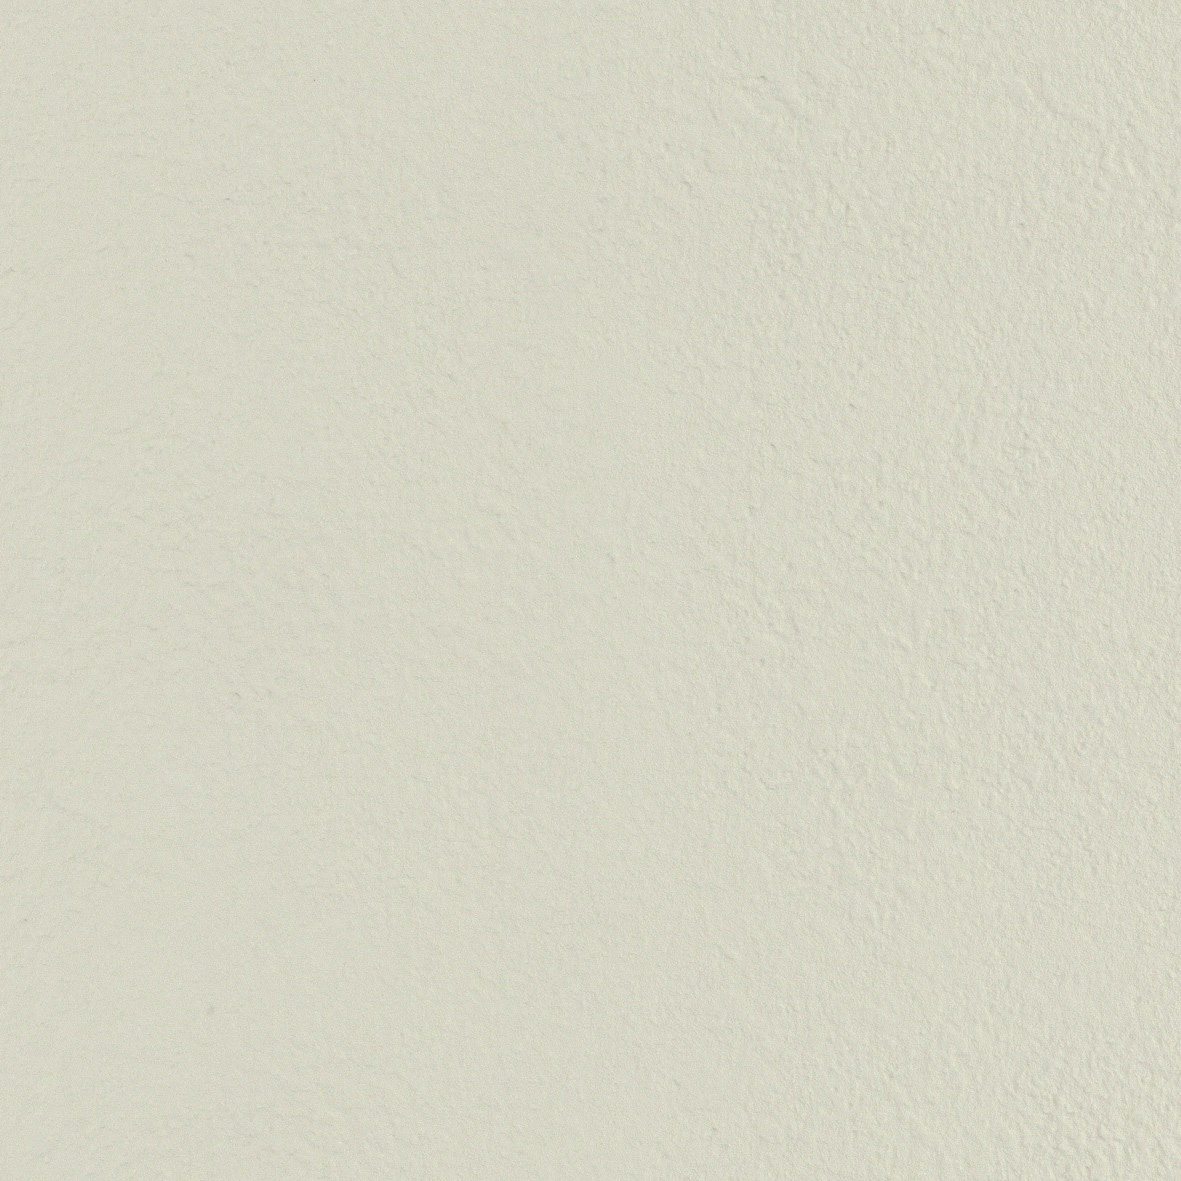 【のり付き】 LV-3016 リリカラ 壁紙/クロス 切売 リリカラ のり付き壁紙/クロス